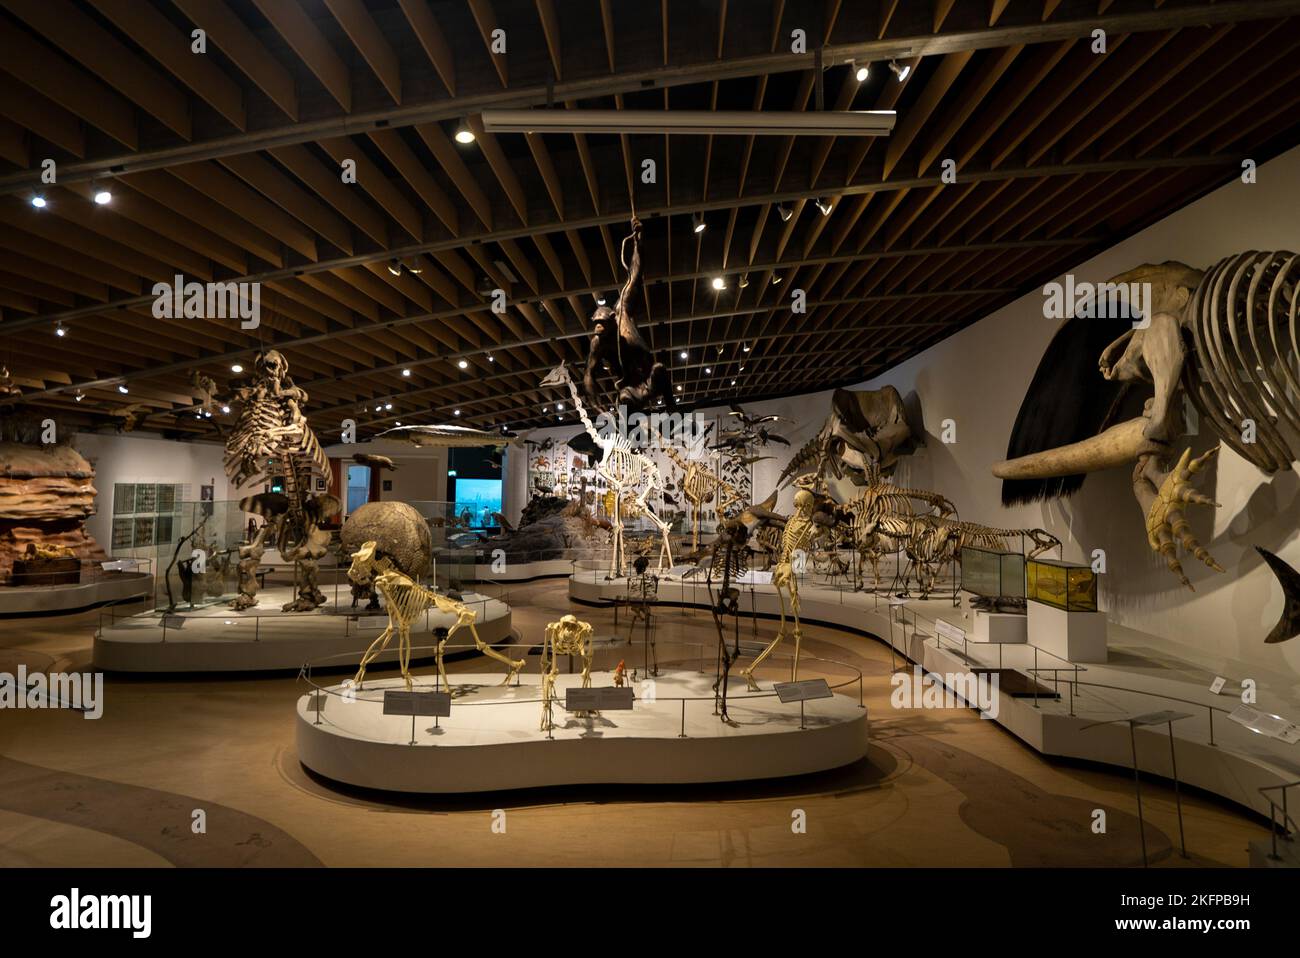 Squelettes d'animaux dans la salle principale à l'intérieur de l'ancien Musée d'Histoire naturelle du Danemark @ Musée zoologique de l'Université de Copenhague. Maintenant fermé. Banque D'Images